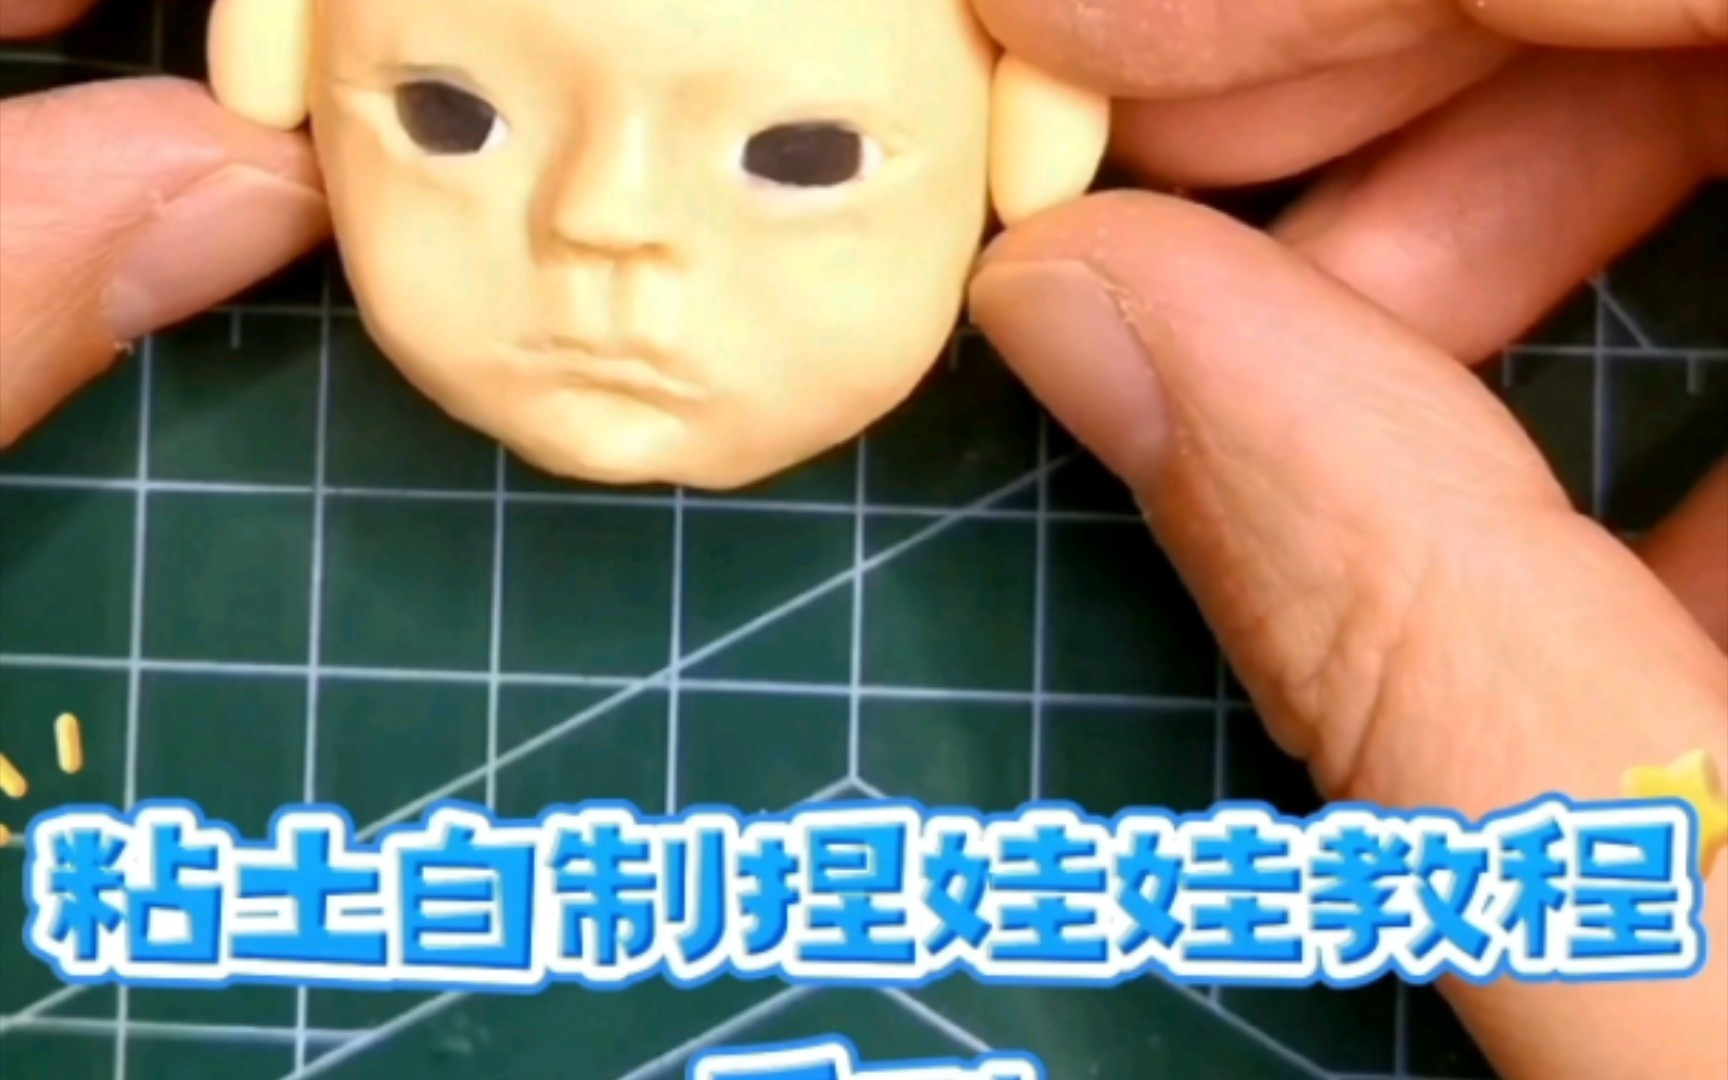 粘土自制捏娃娃教程系列之人体头像